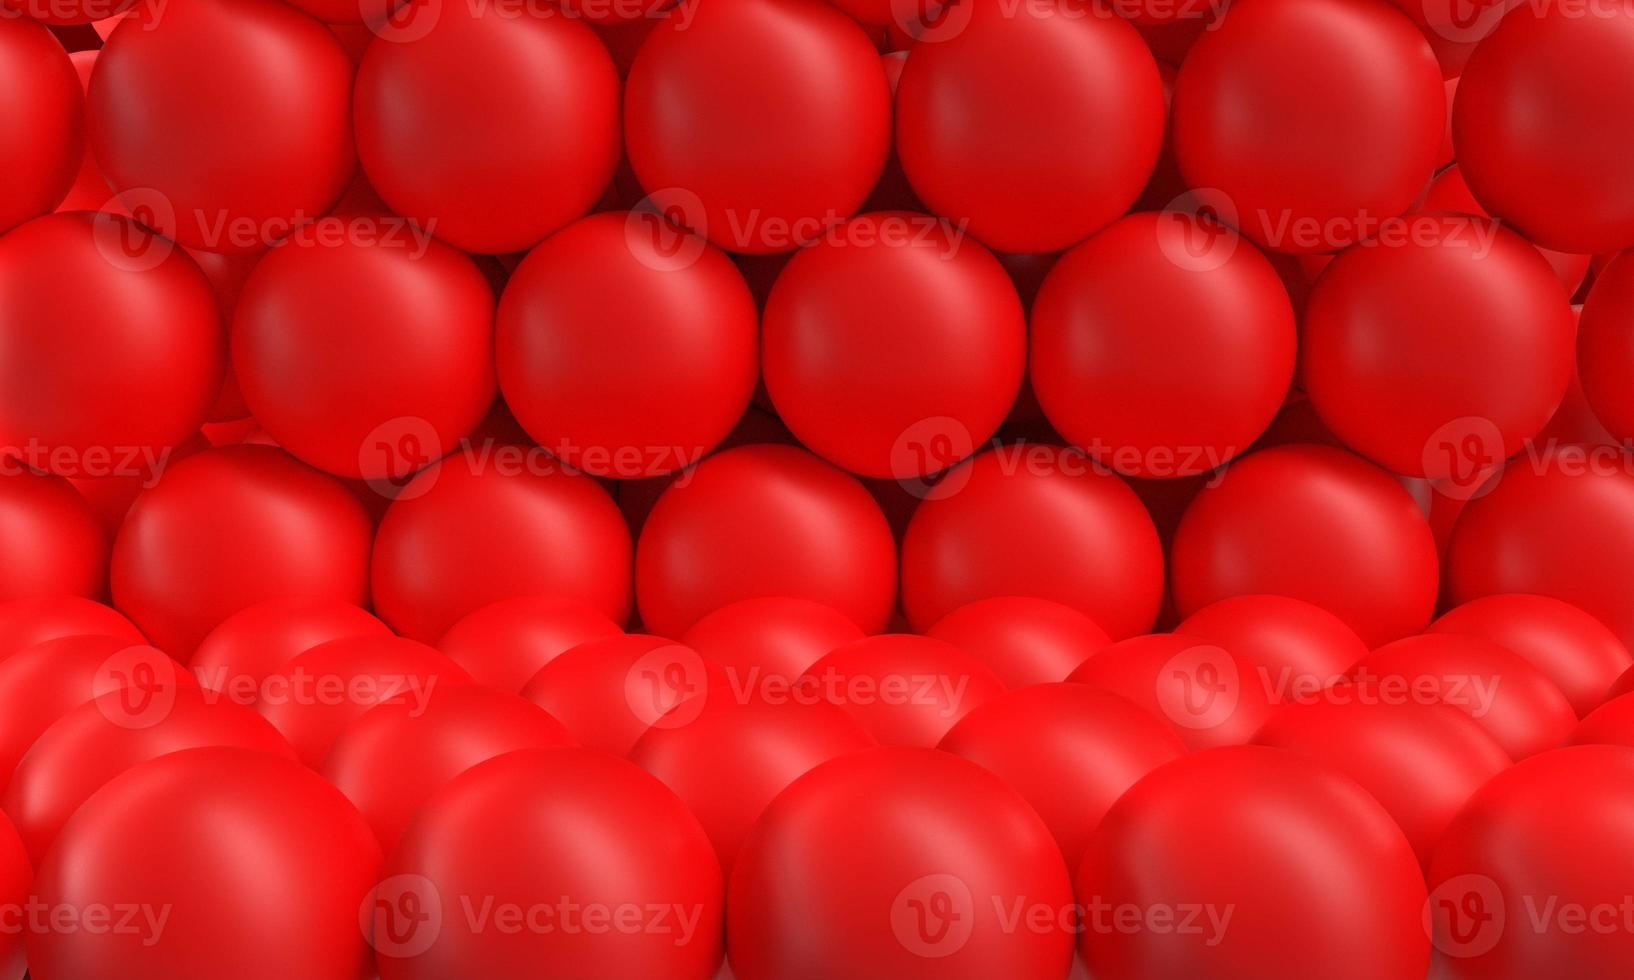 vermelho rosa laranja círculo forma redonda fundo gráfico criativo papel de parede vazio abstrato padrão símbolo decorar ornamento feliz ano novo chinês dia dos namorados aniversário anúncio celebration.3d render foto